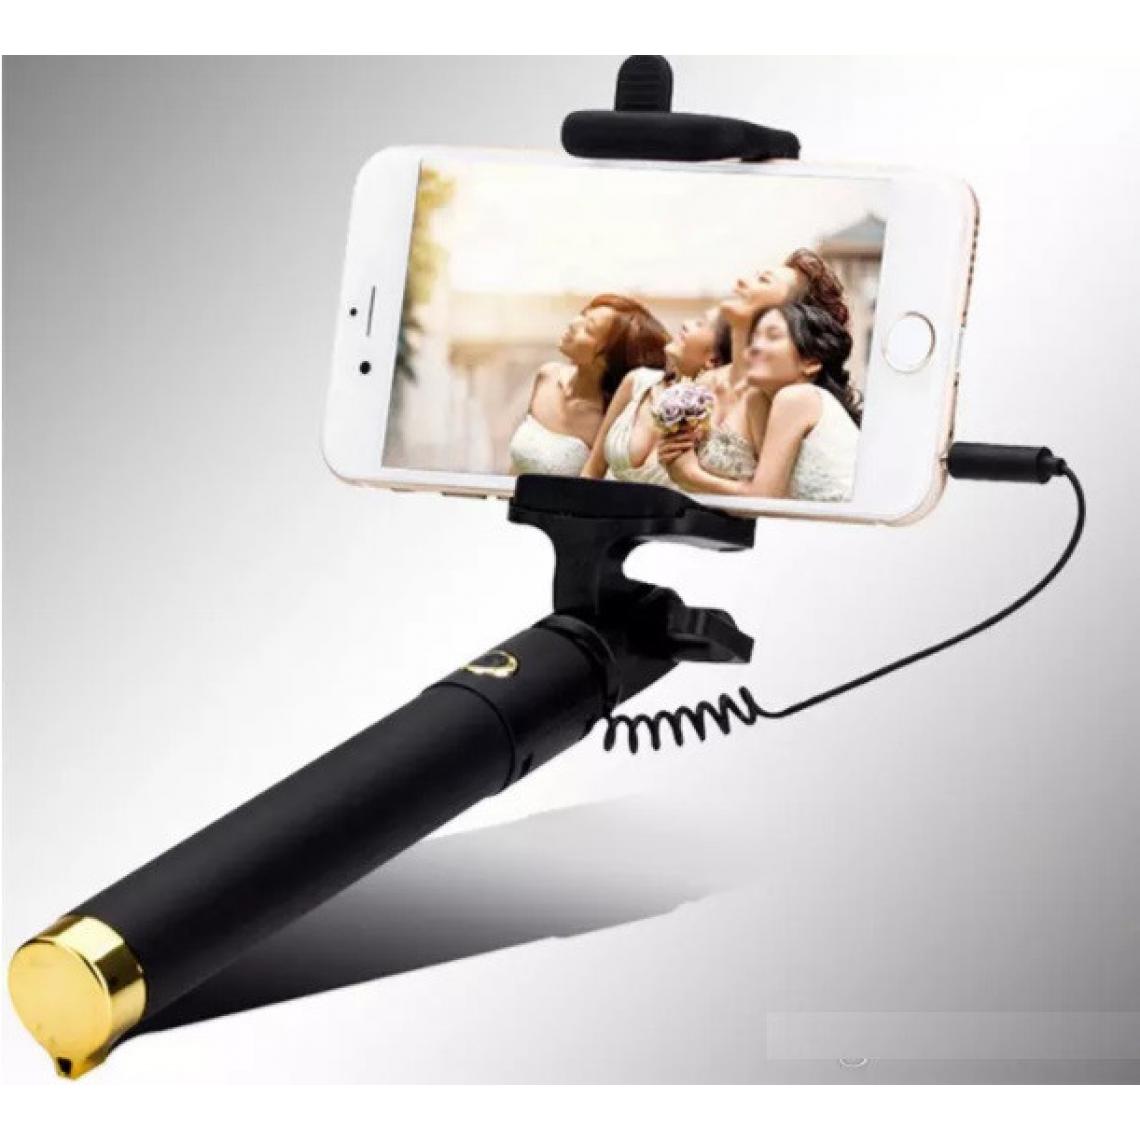 Shot - Perche Selfie Metal pour "SAMSUNG Galaxy S20 FE" Smartphone avec Cable Jack Selfie Stick Android IOS Reglable Bouton Photo (OR) - Autres accessoires smartphone